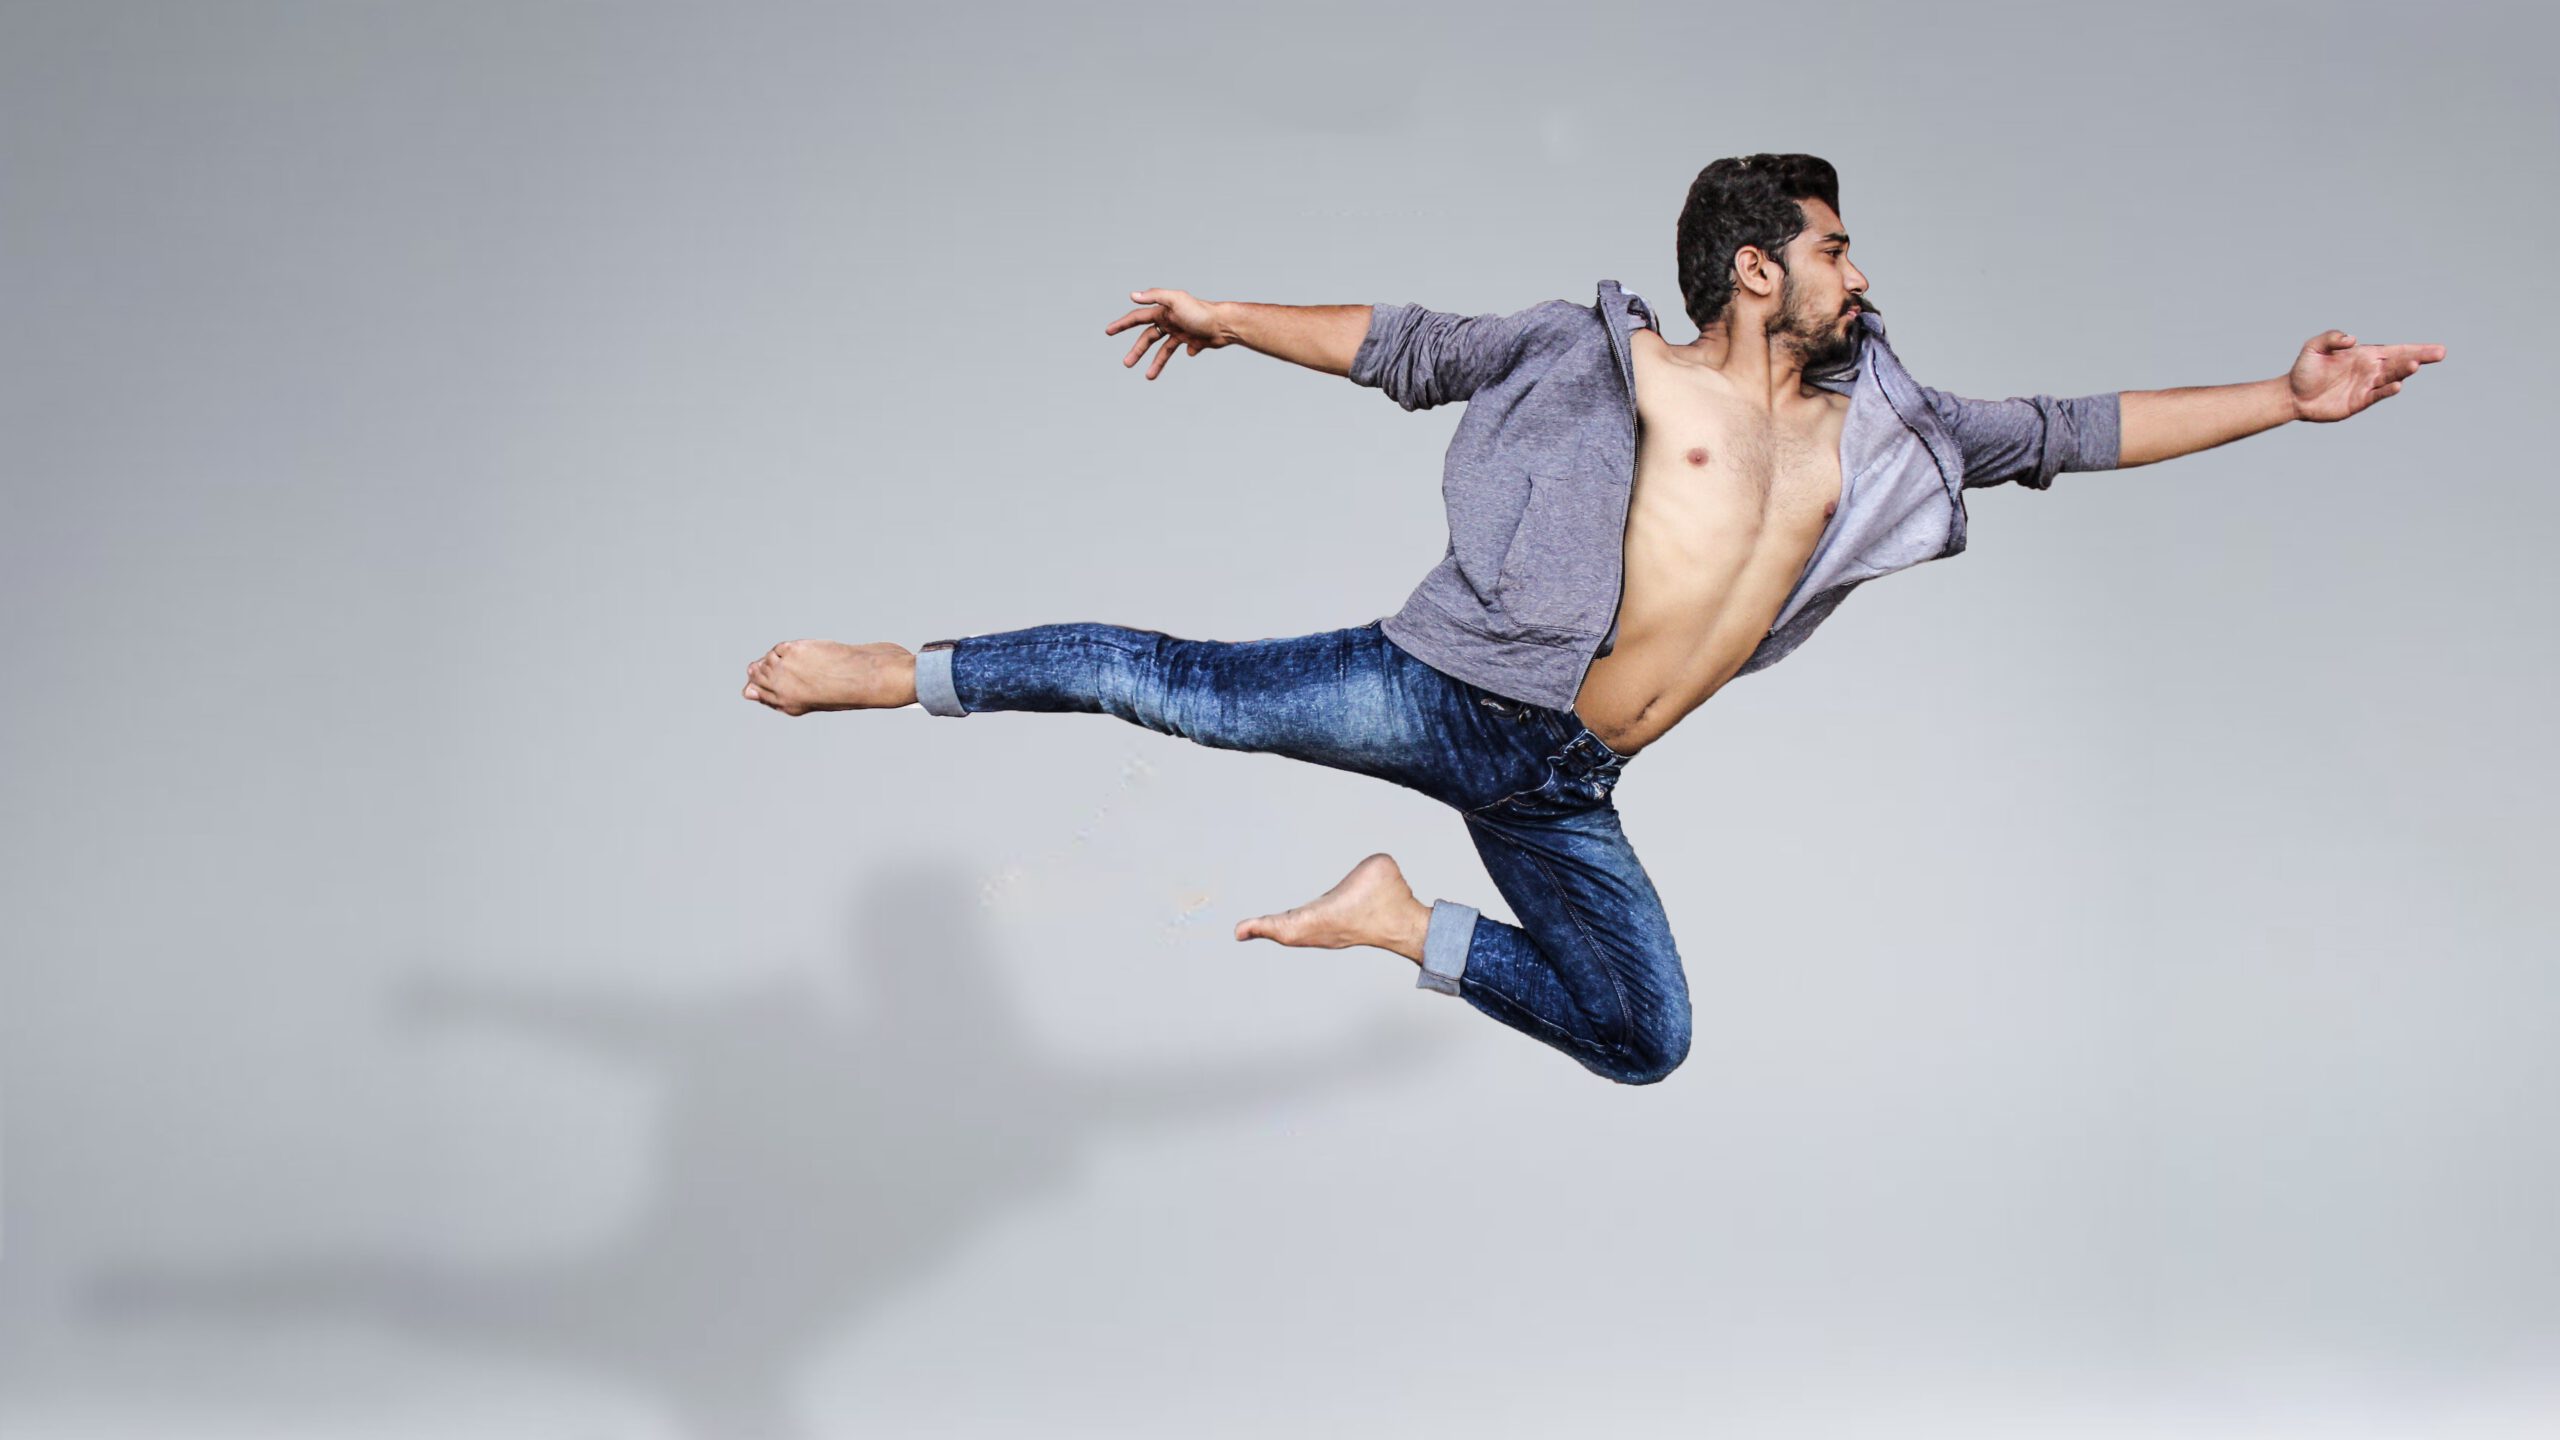 Tancerz podczas sesji zdjęciowej unoszący się w powietrzu na białym tle